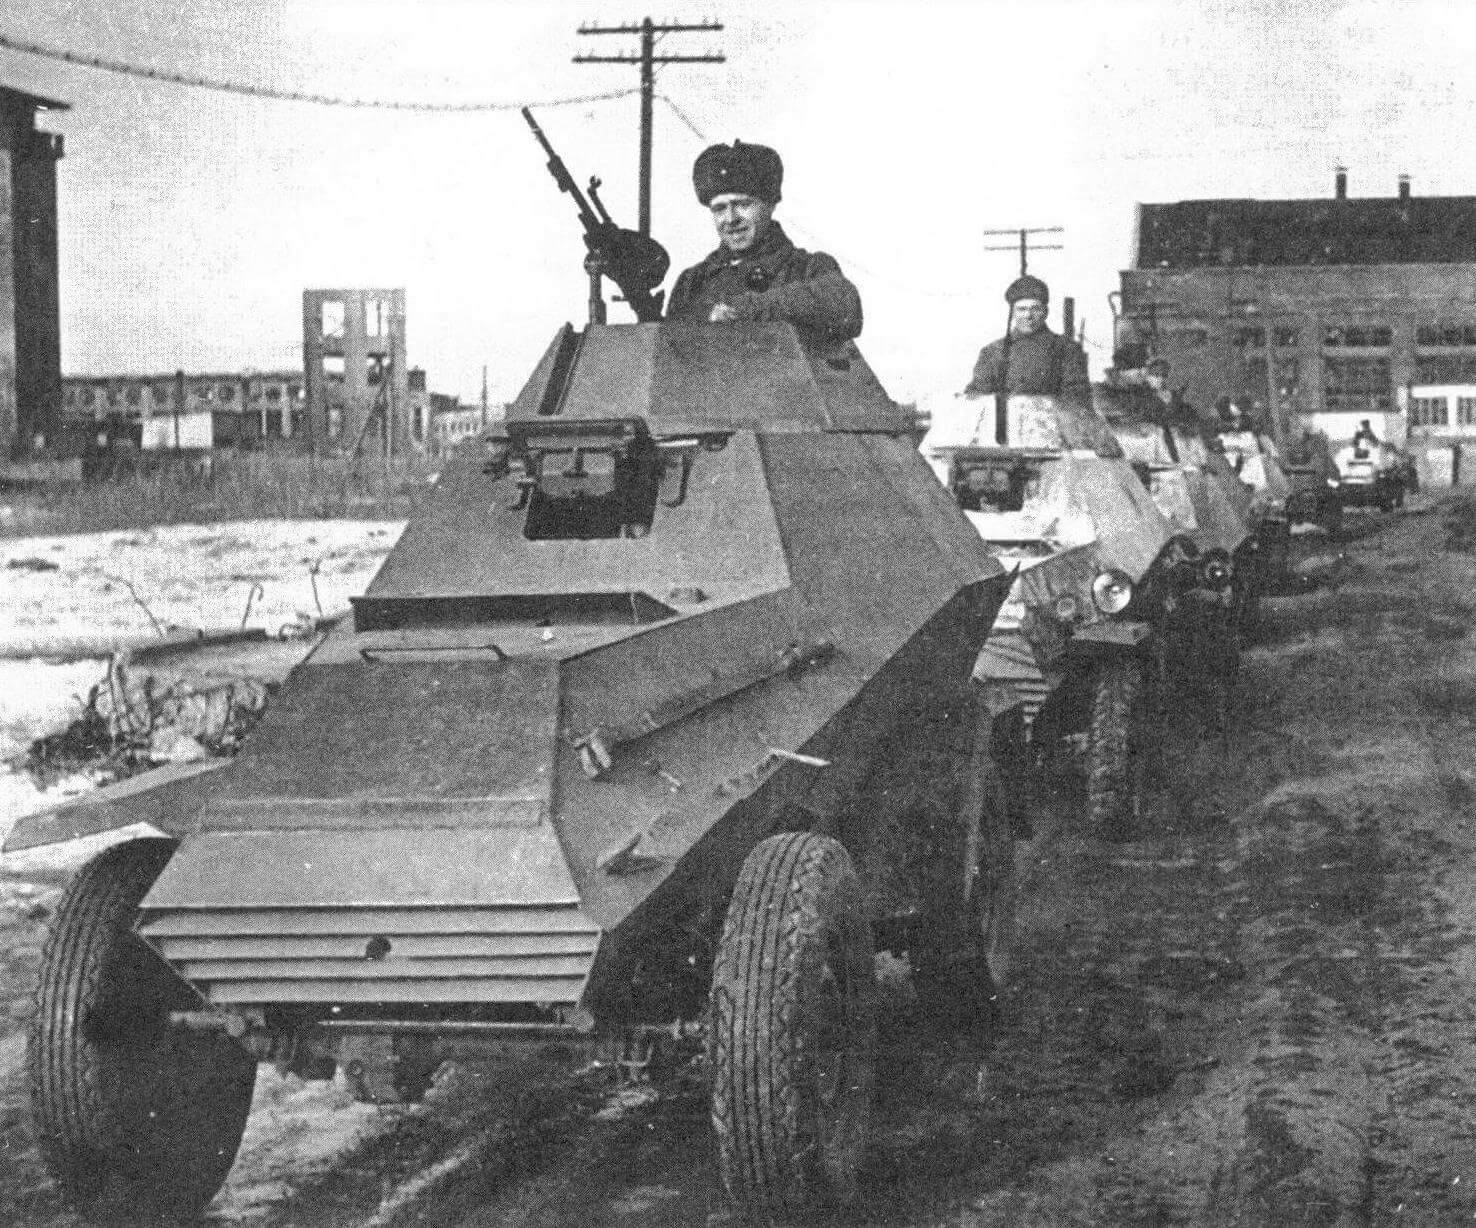 Колонна бронеавтомобилей БА-64. Район Сталинграда, февраль 1943 года